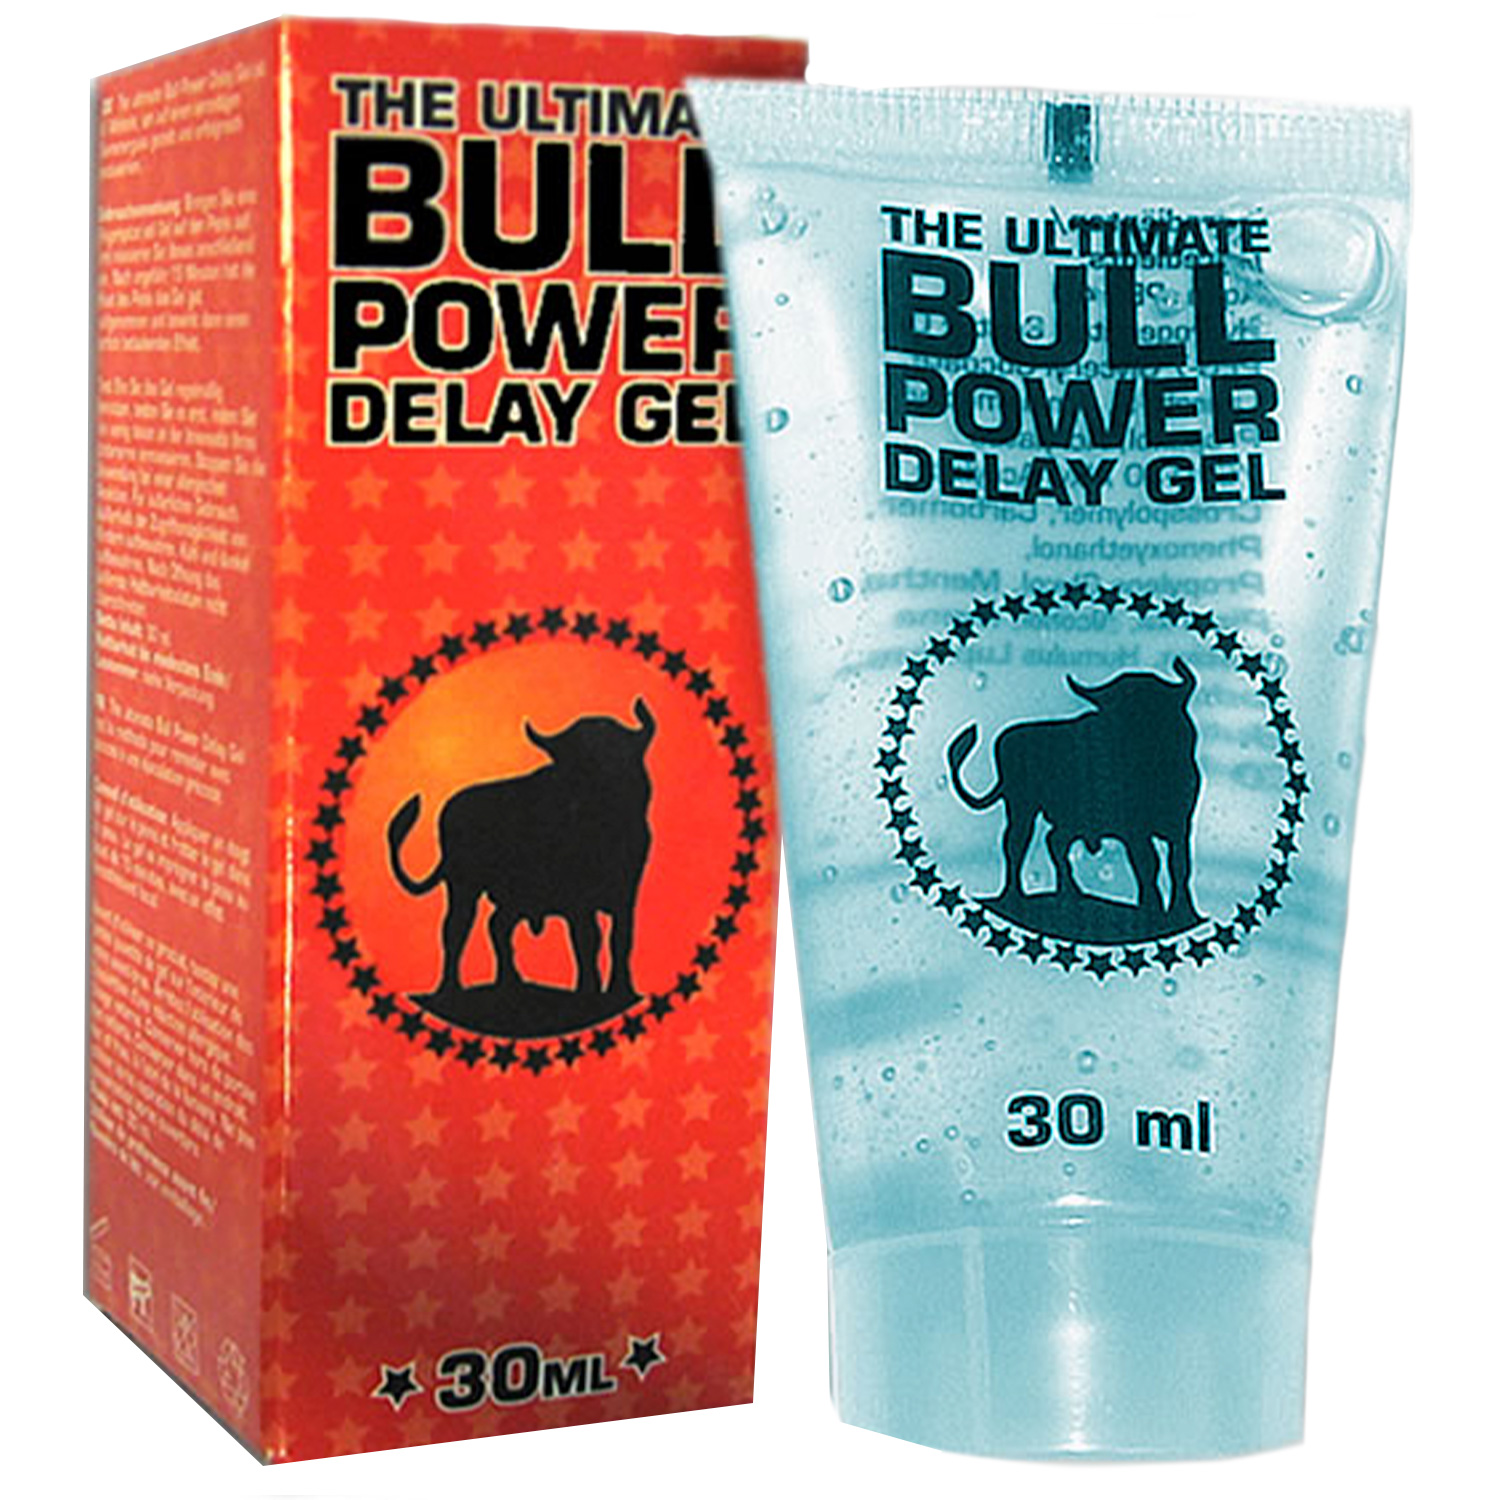 Bull Power